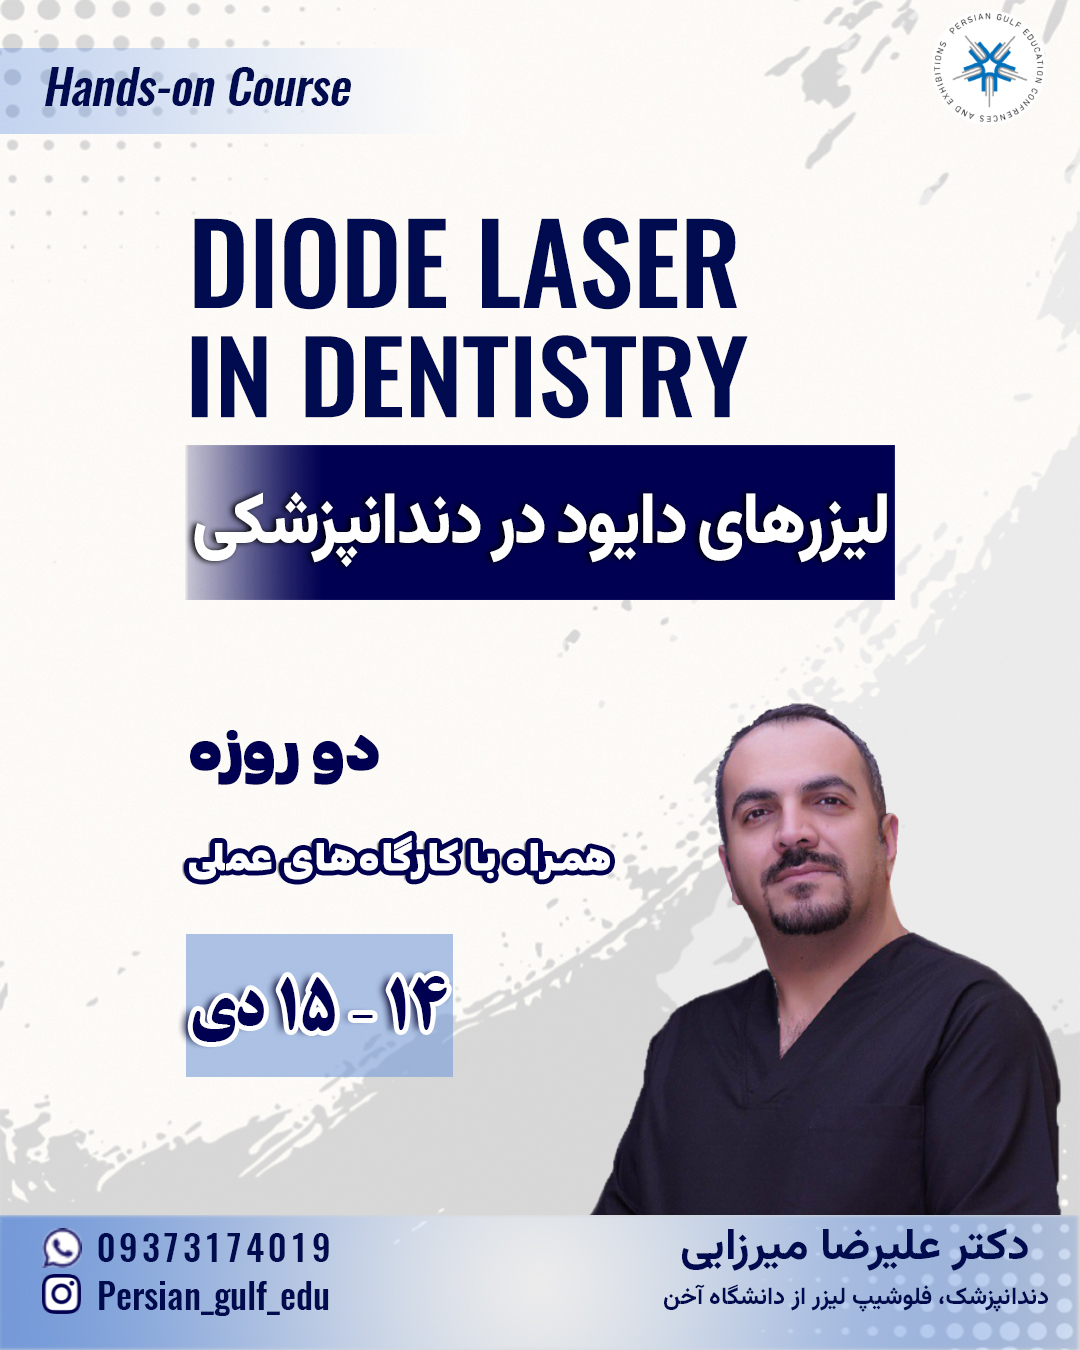 دوره لیزرهای دایود در دندانپزشکی_ همراه با کارگاه های عملی